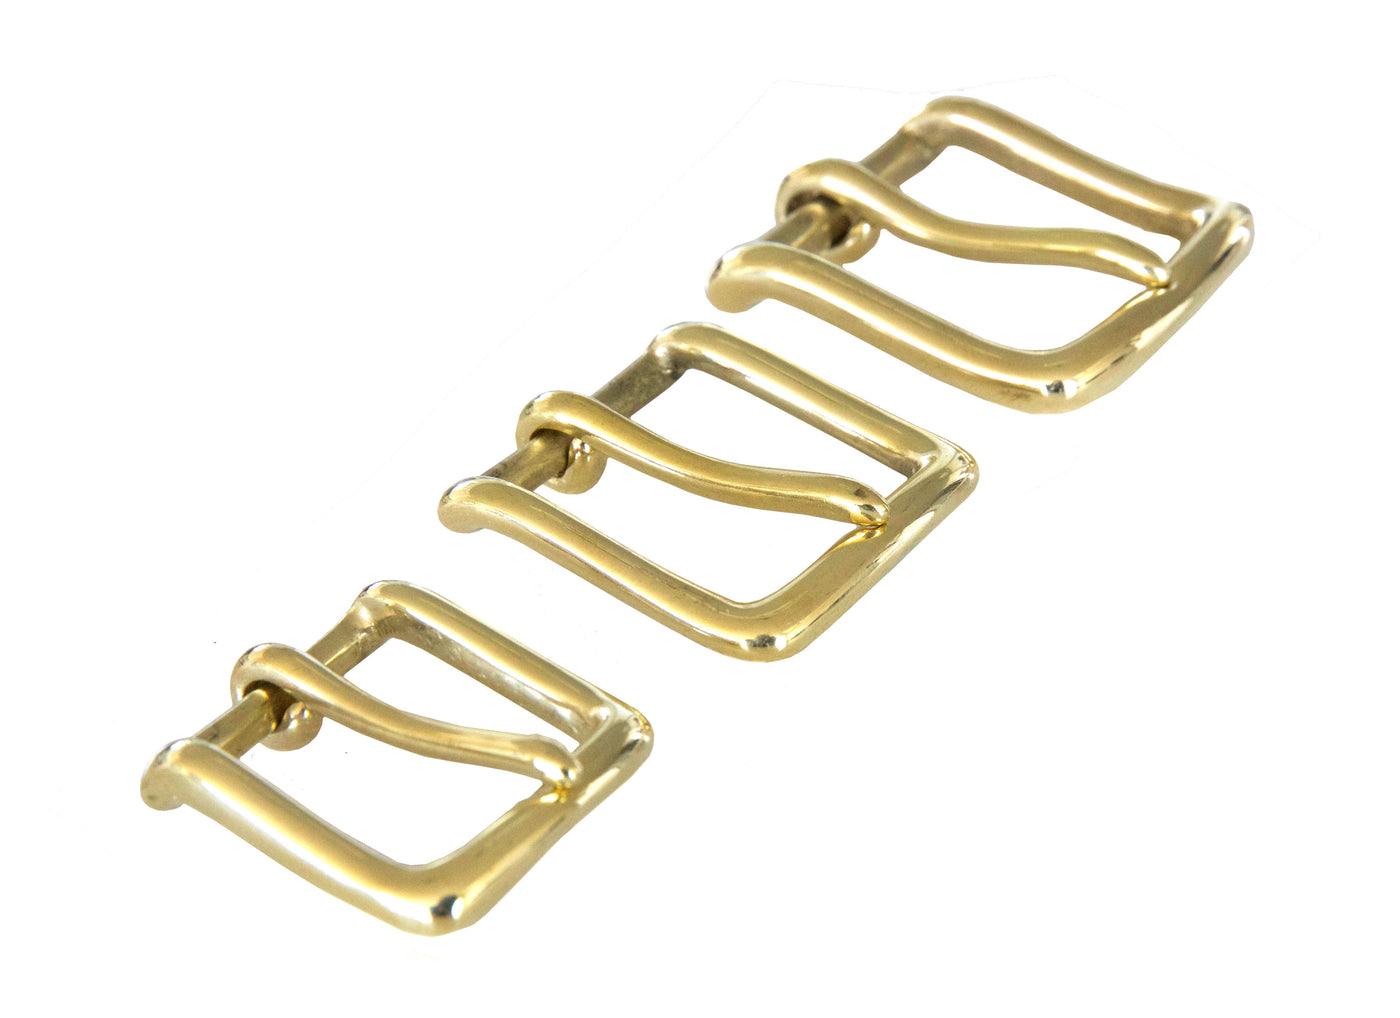 brass belt buckles